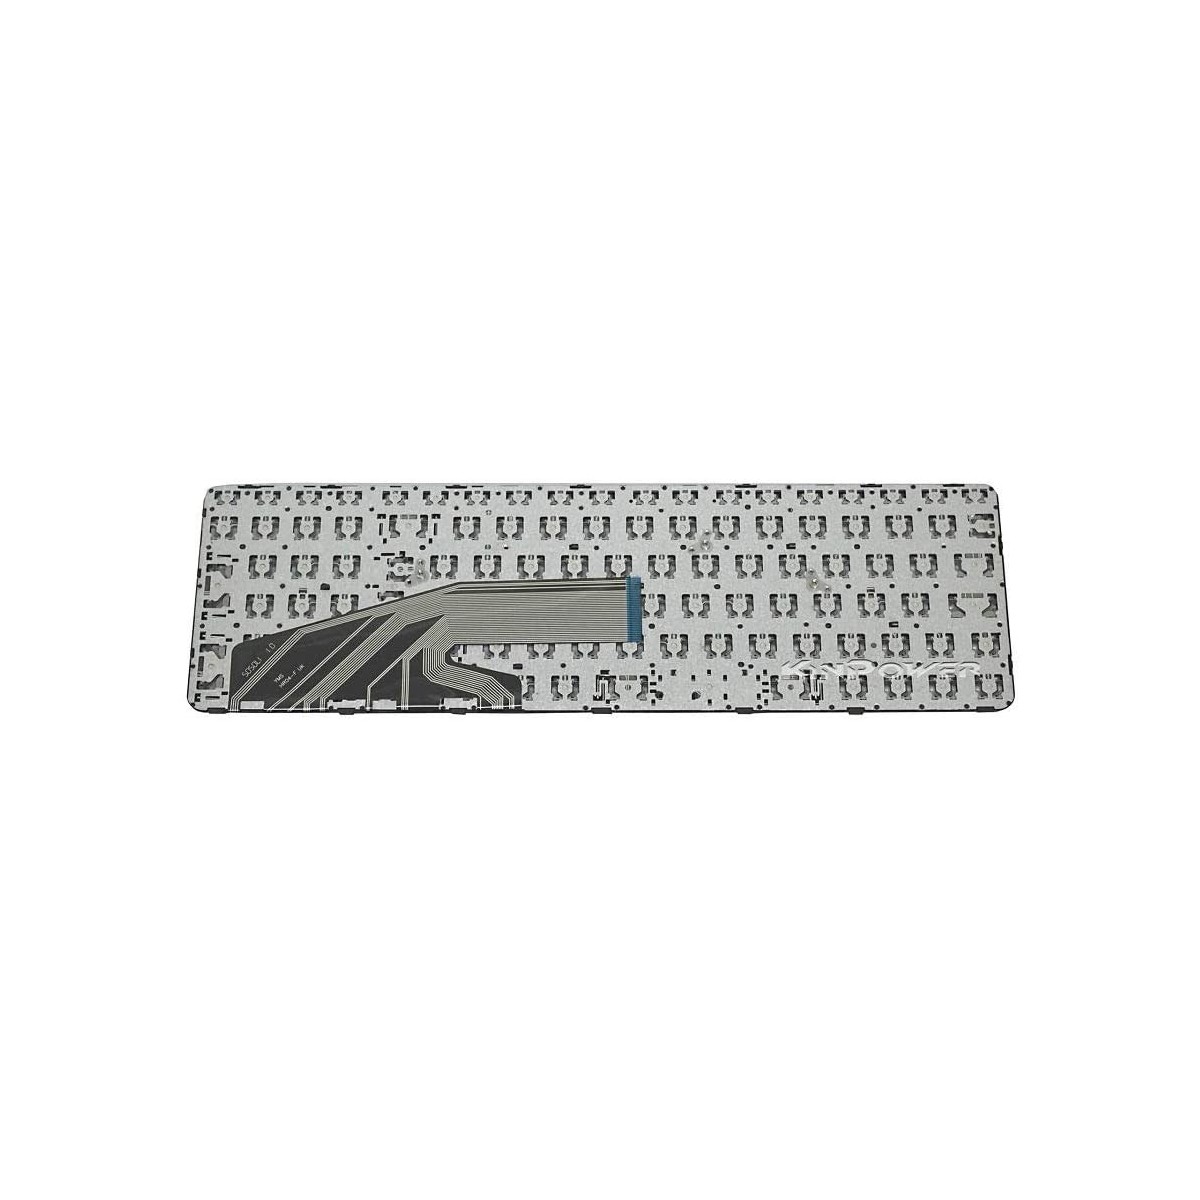 Clavier Français compatible Pour HP ProBook 470 G3 SERIES 841136-051